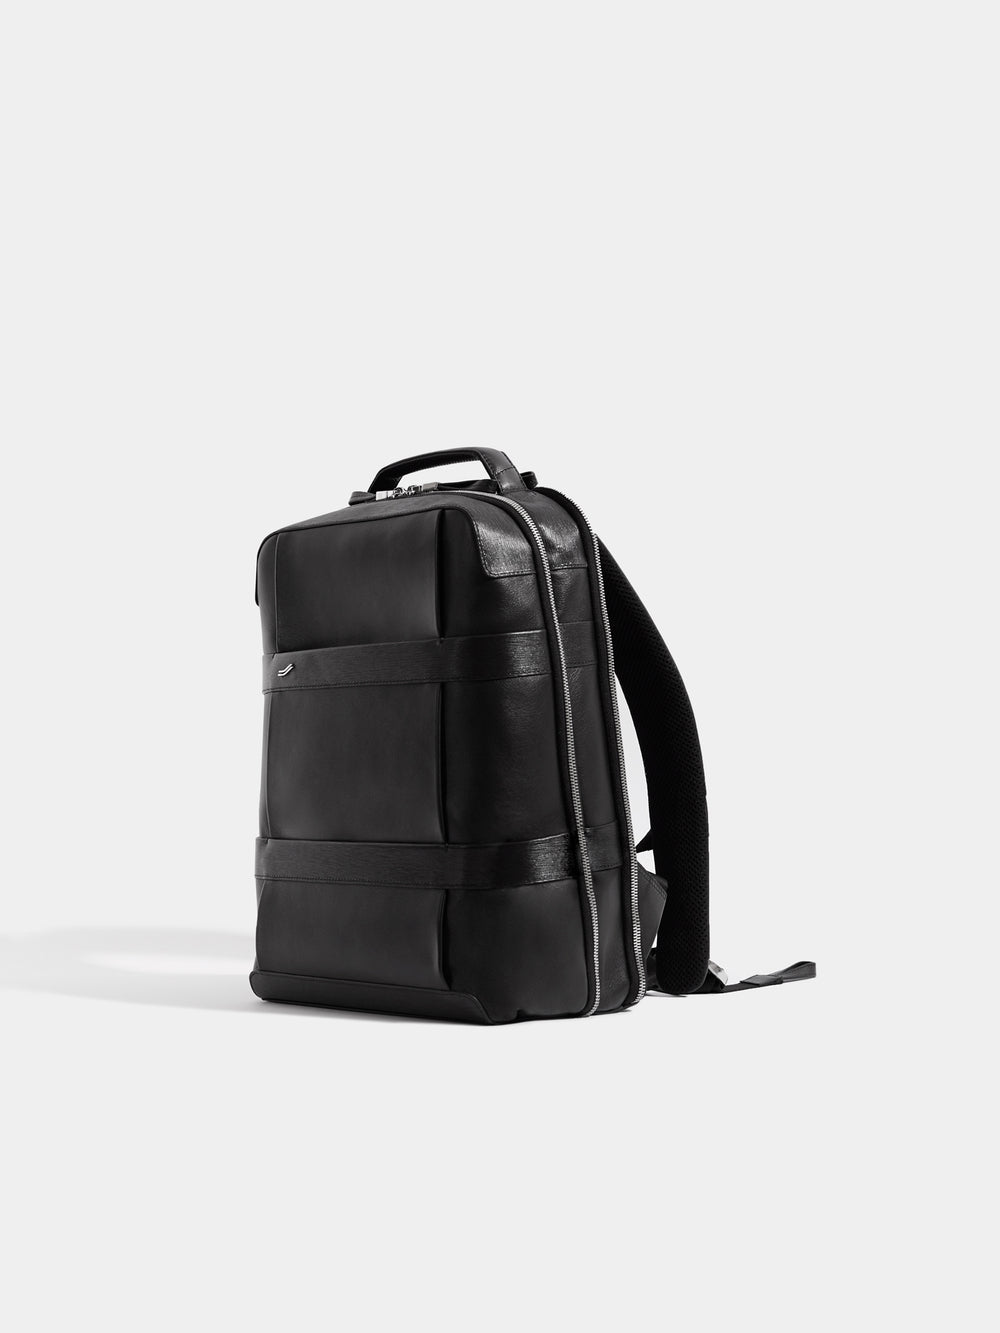 VOCIER Backpack Small | Business Leather Backpack | Black